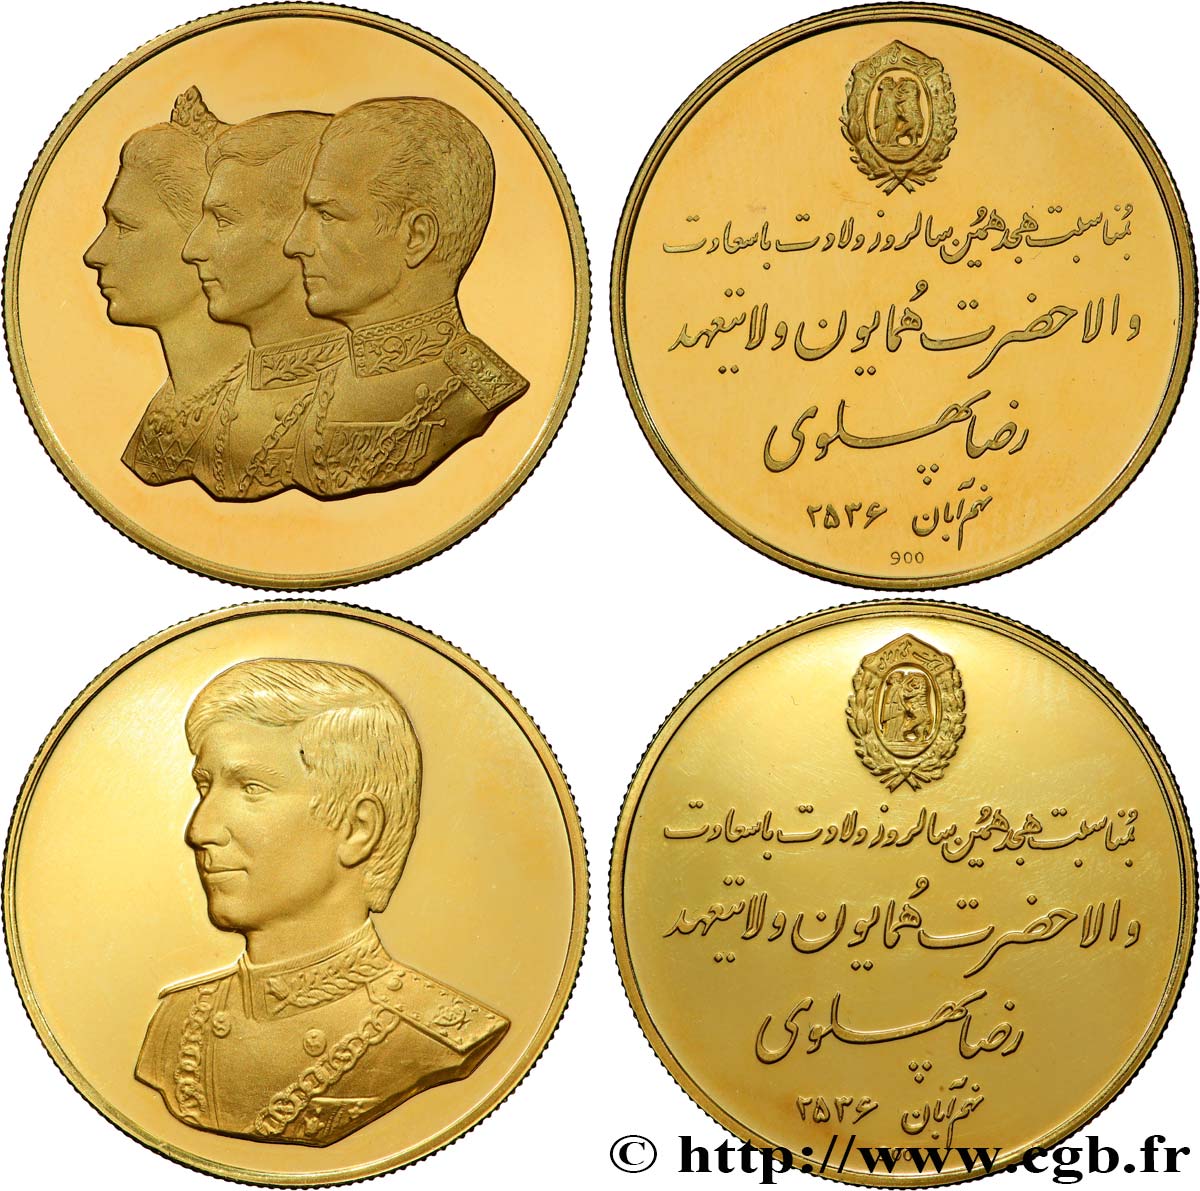 IRAN - MOHAMMAD RIZA PAHLAVI SHAH Lot de 2 médailles, 18e anniversaire du prince héritier Reza Pahlavi SPL+